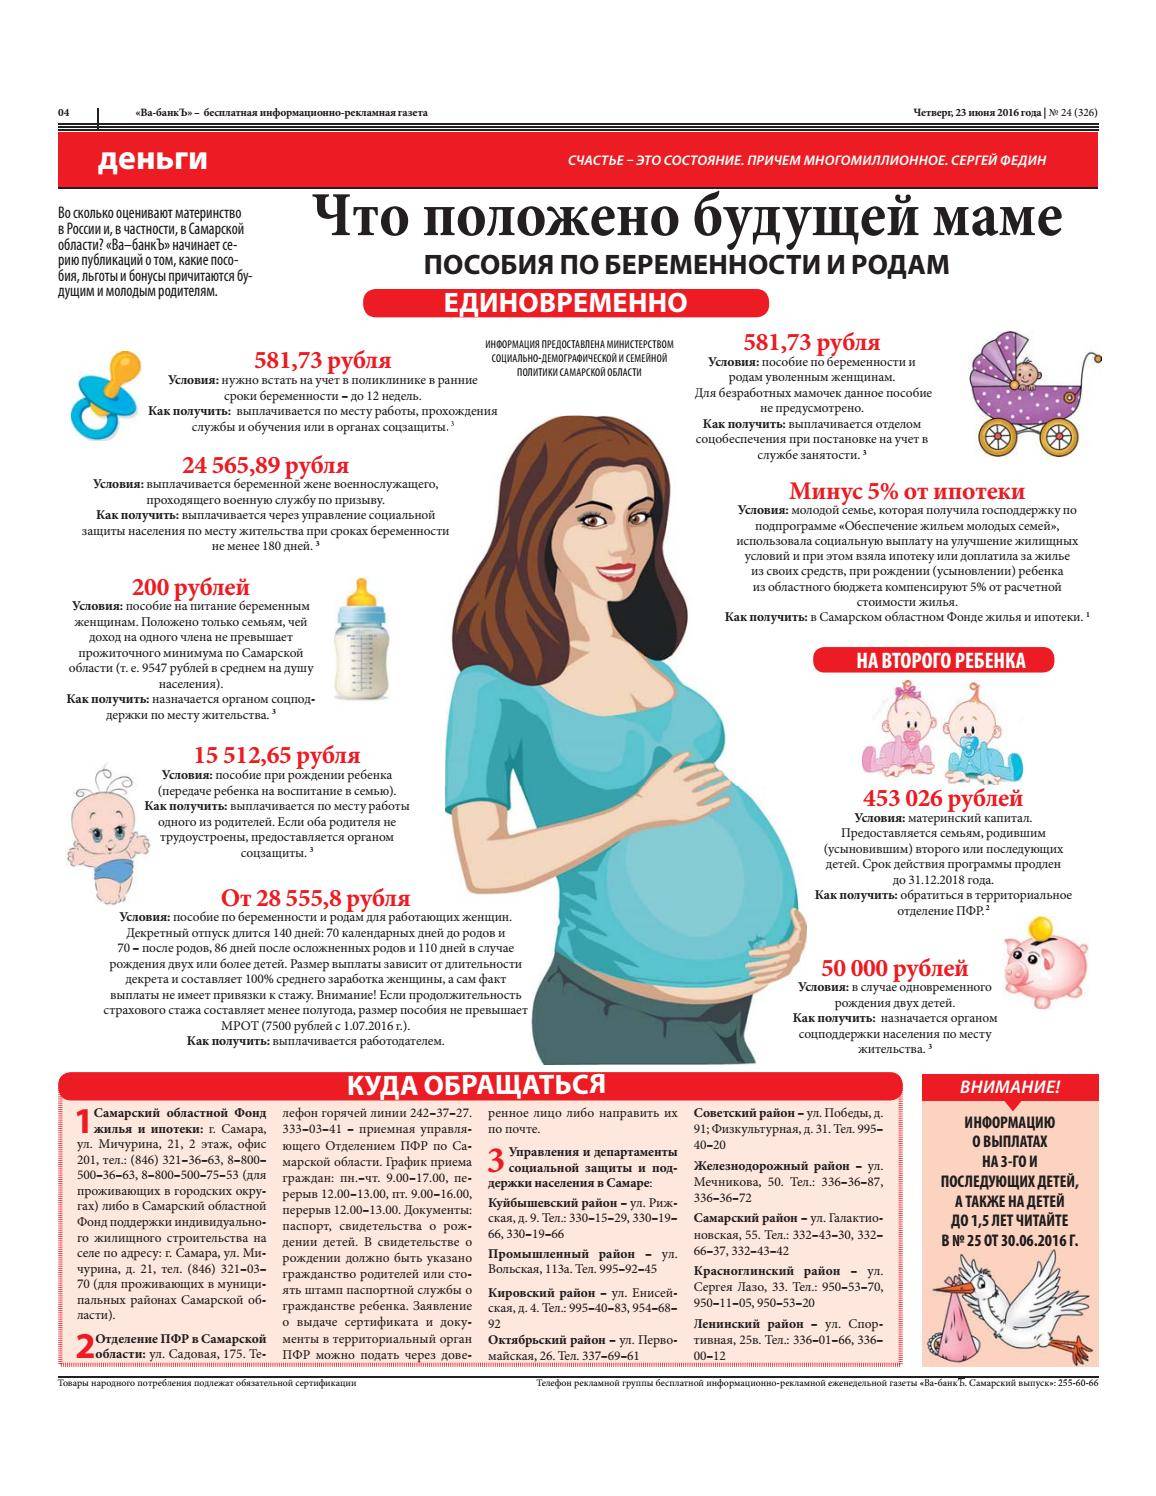 Как получить пособие по беременности и родам